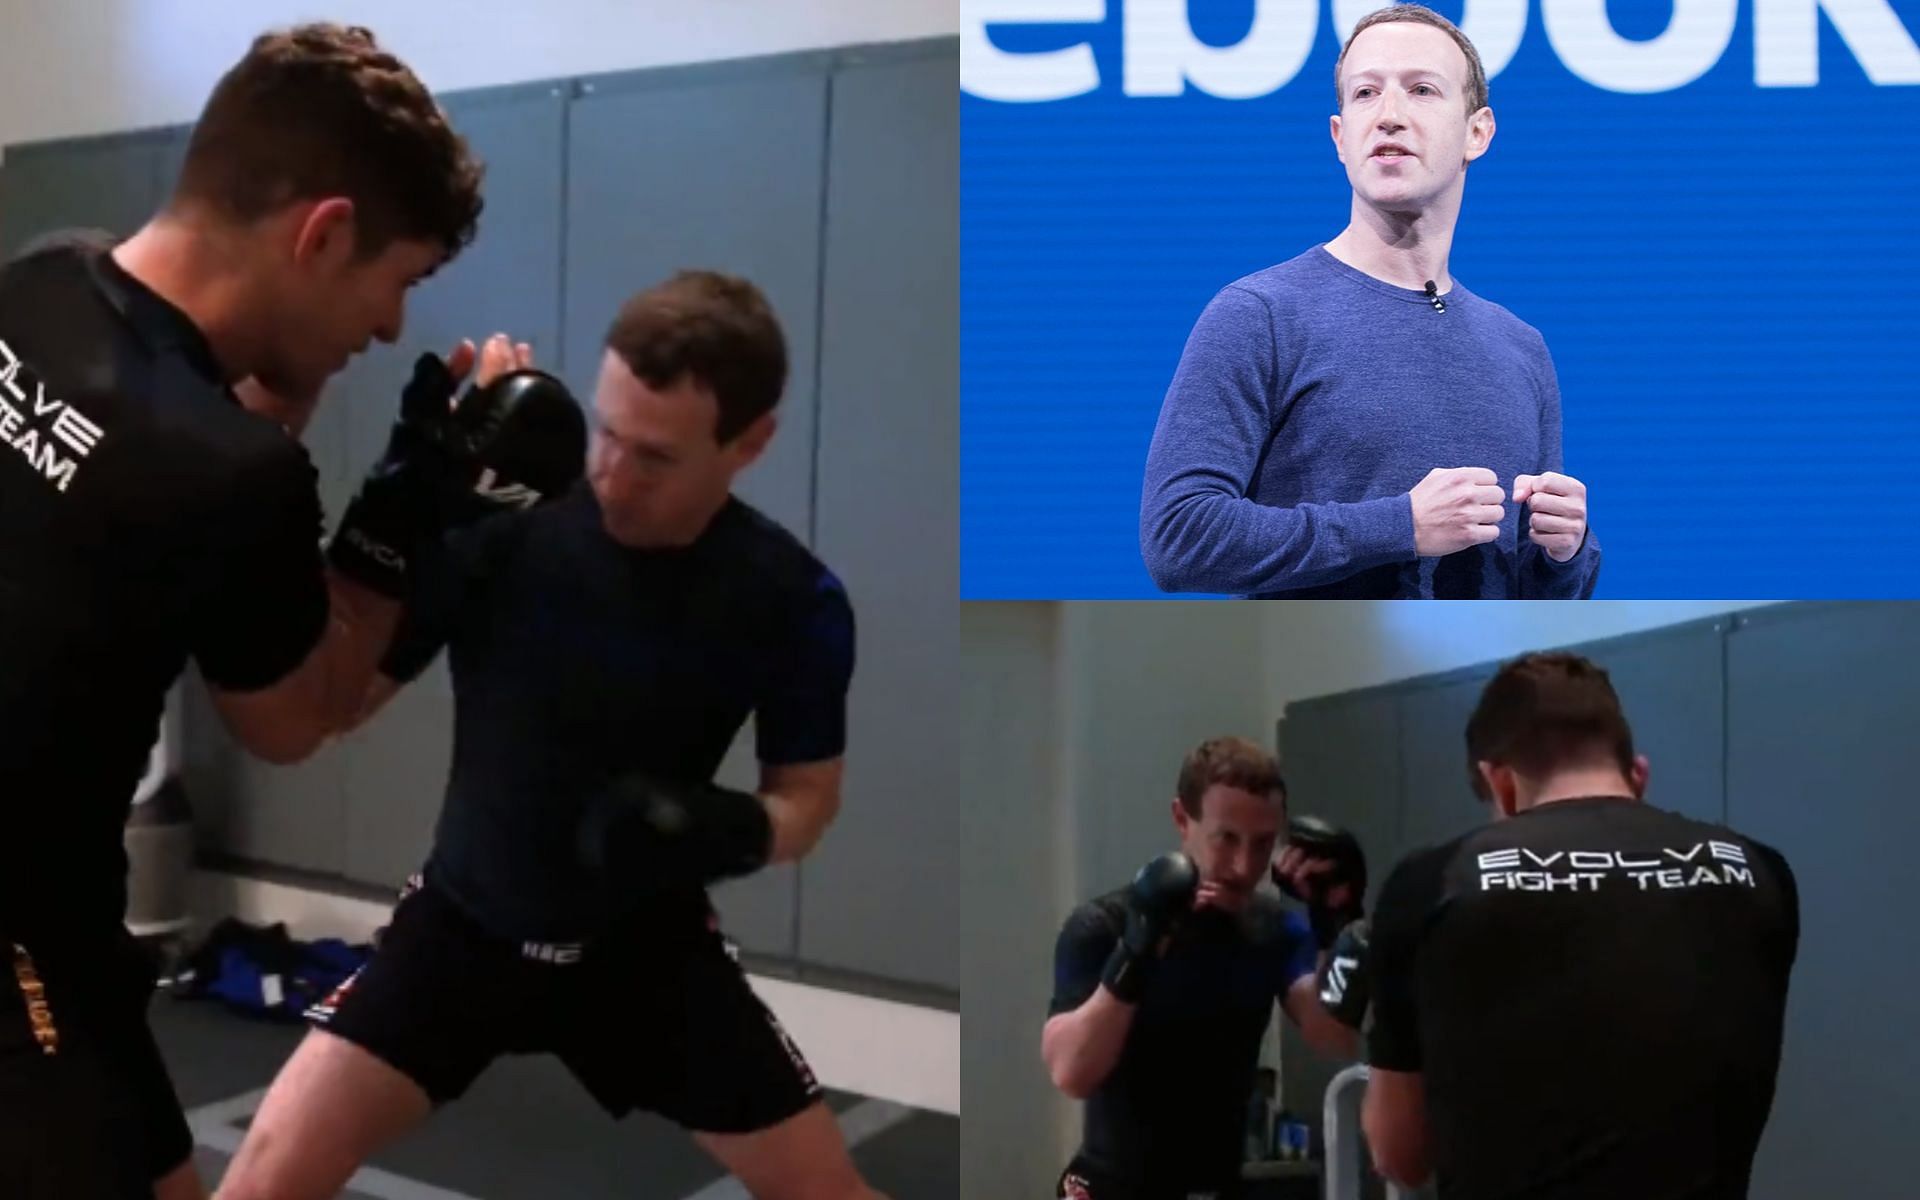 Mark Zuckerberg training MMA [Image courtesy: @HappyPunchPromo, @AnthonyQuintano on Twitter]